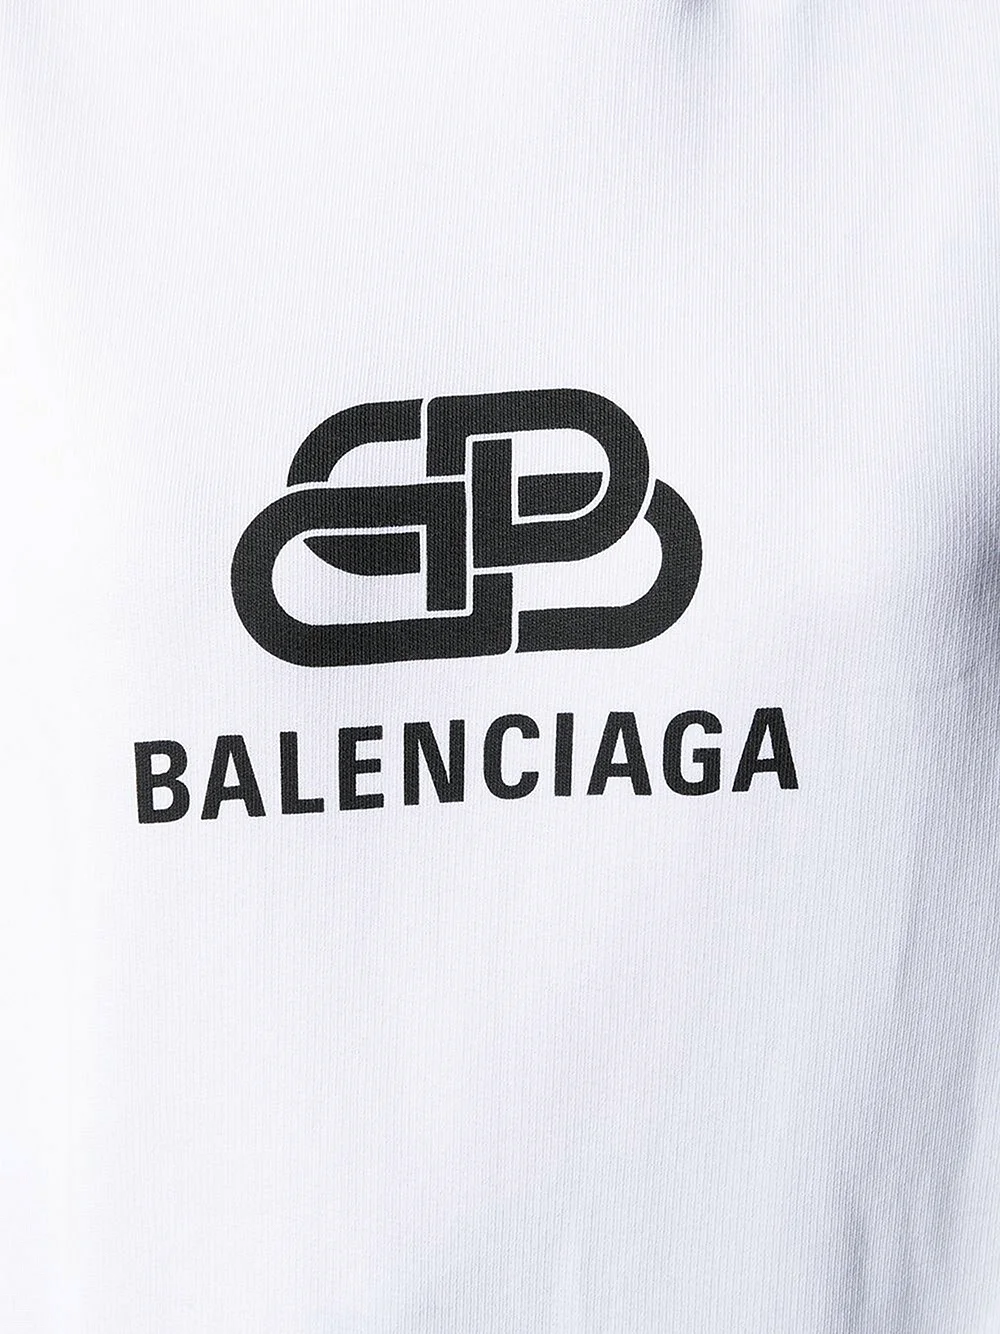 Логотип ВВ Balenciaga